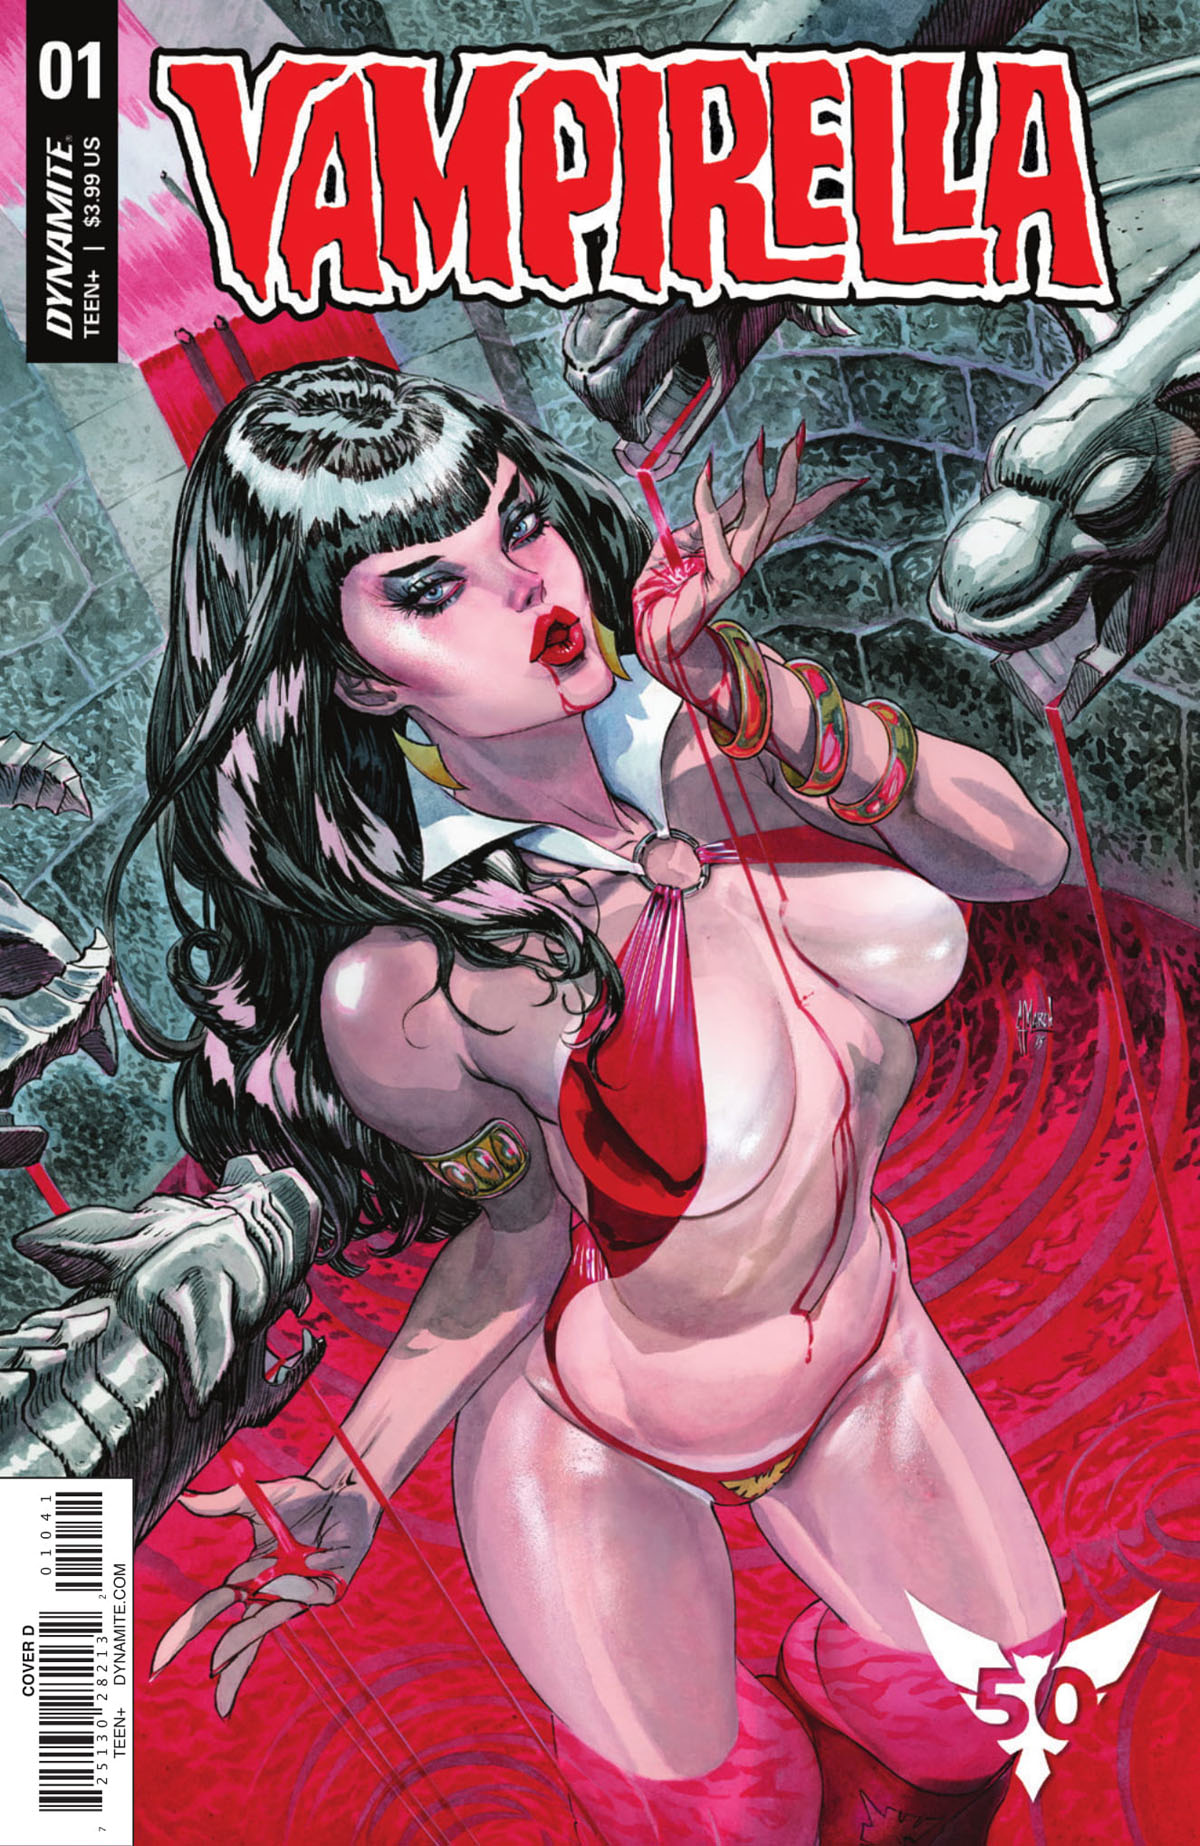 Vampirella #1 cover